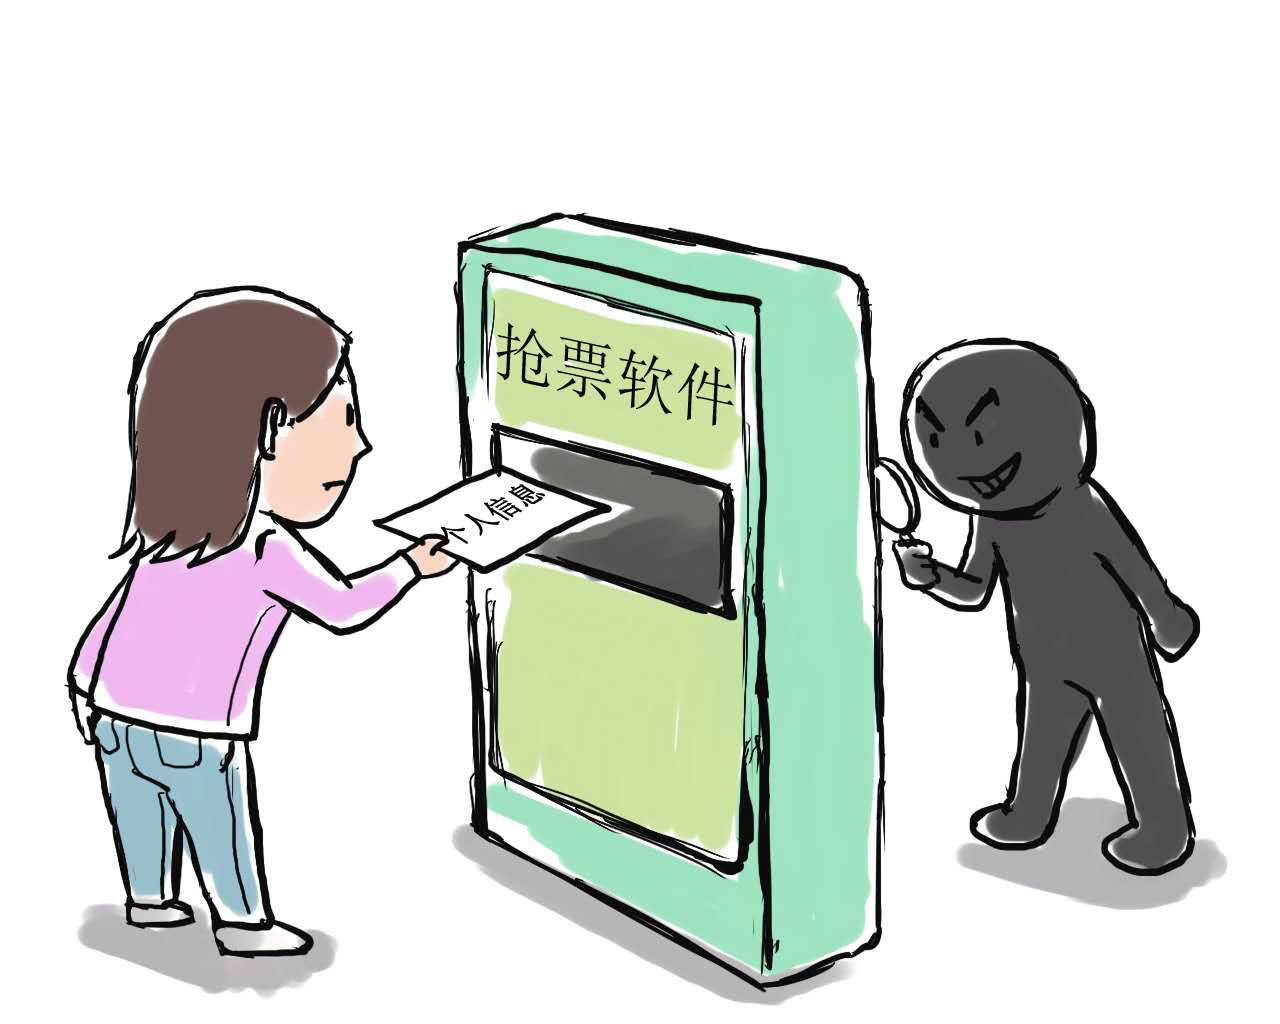 【新春走基层】铁路警方画漫画，提醒旅客从正规渠道购票